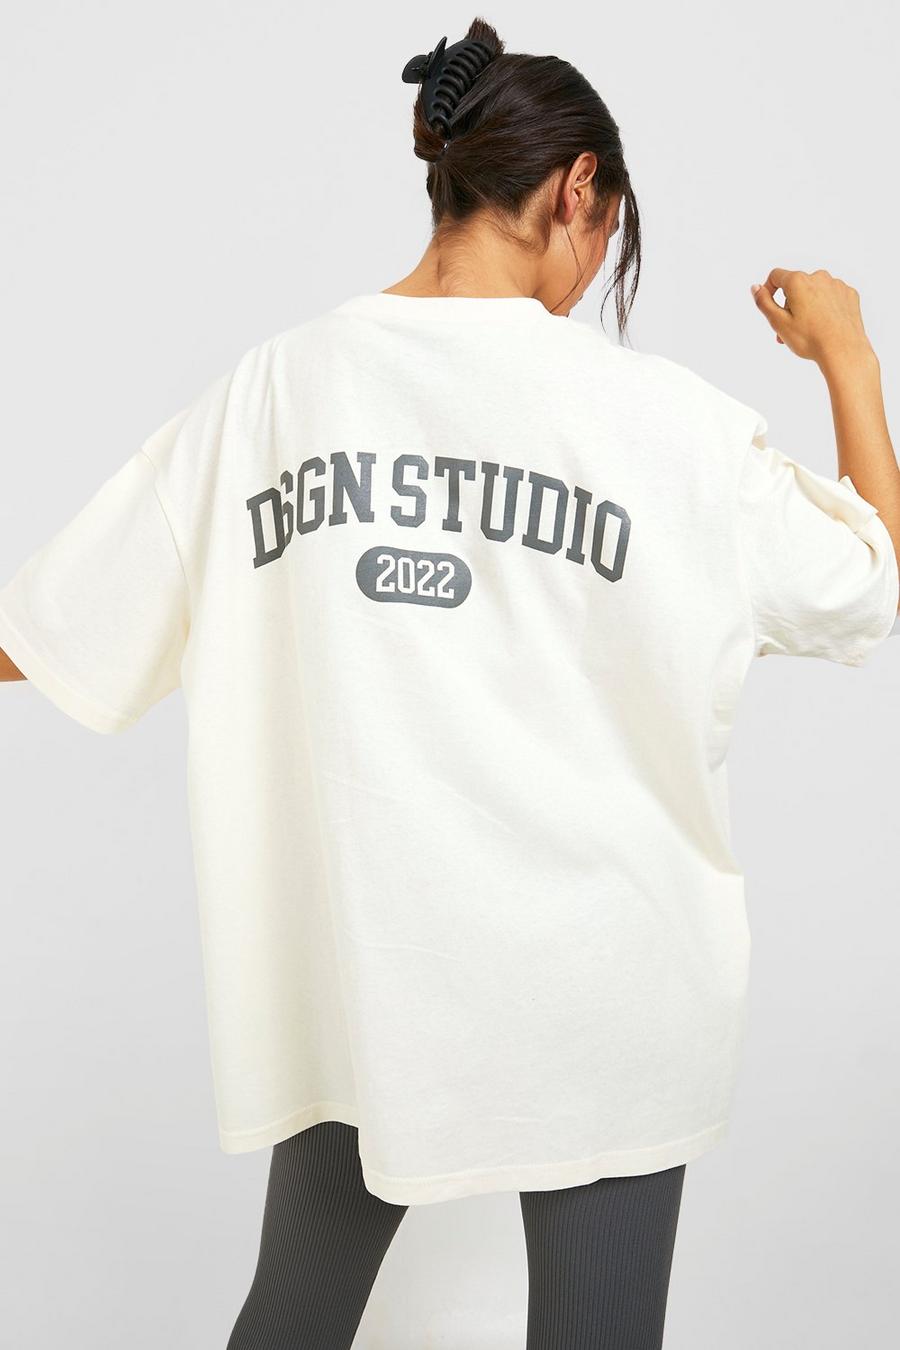 Camiseta oversize con estampado Dsgn Studio en la espalda, Ecru bianco